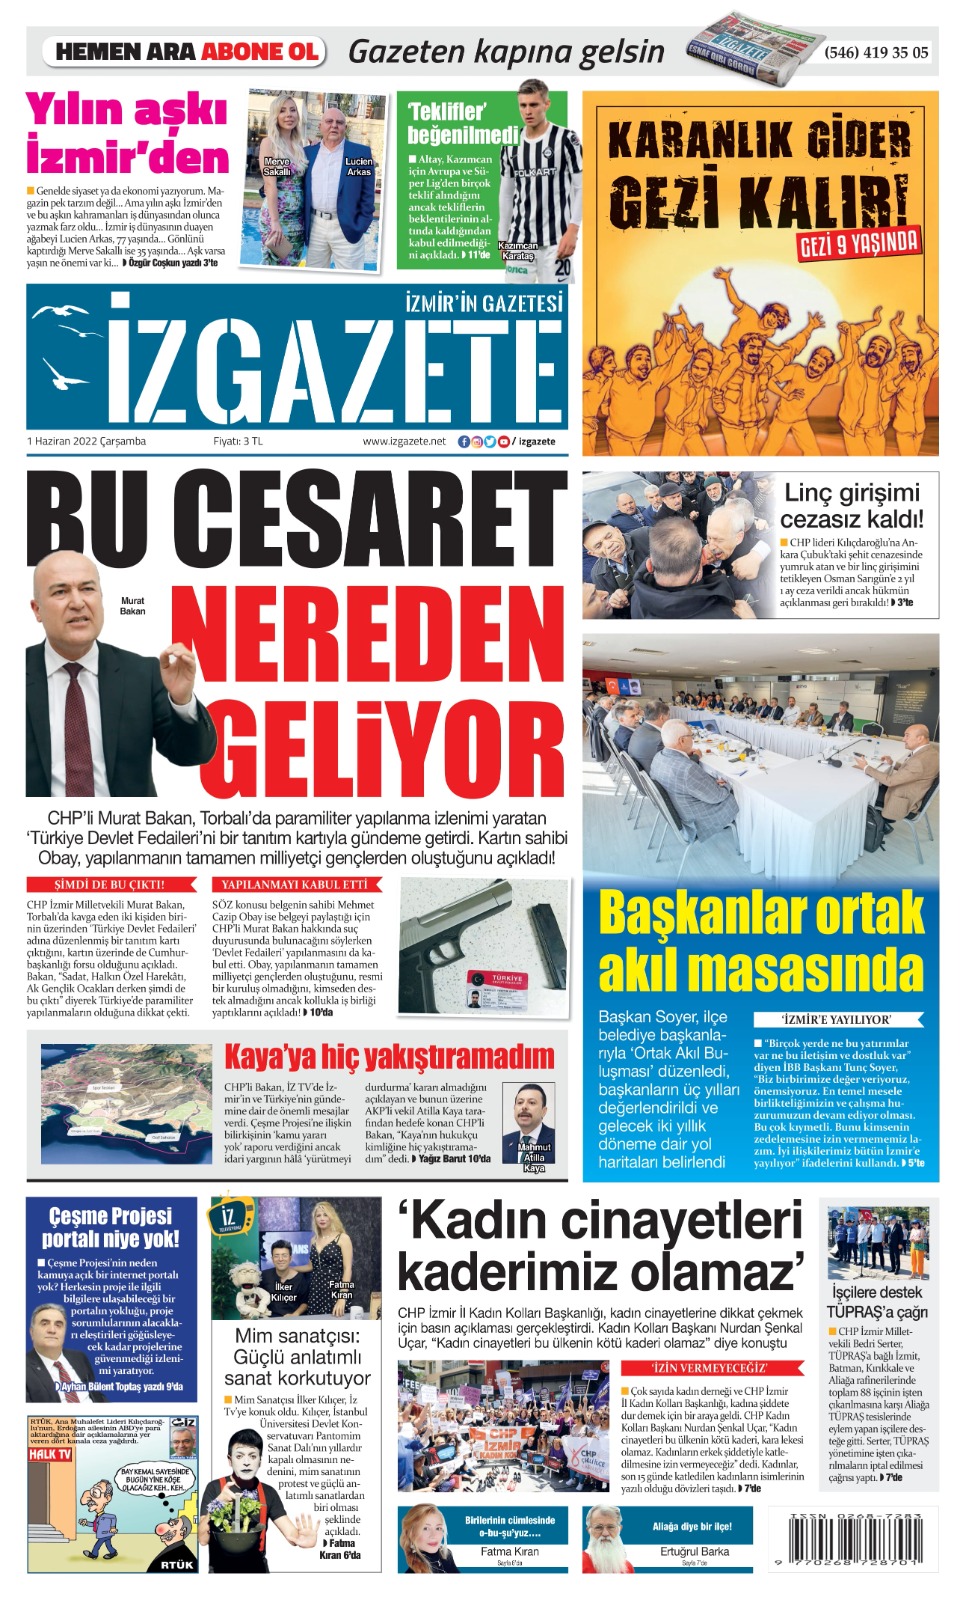 İz Gazete - İzmir'in Gazetesi - 01.06.2022 Manşeti